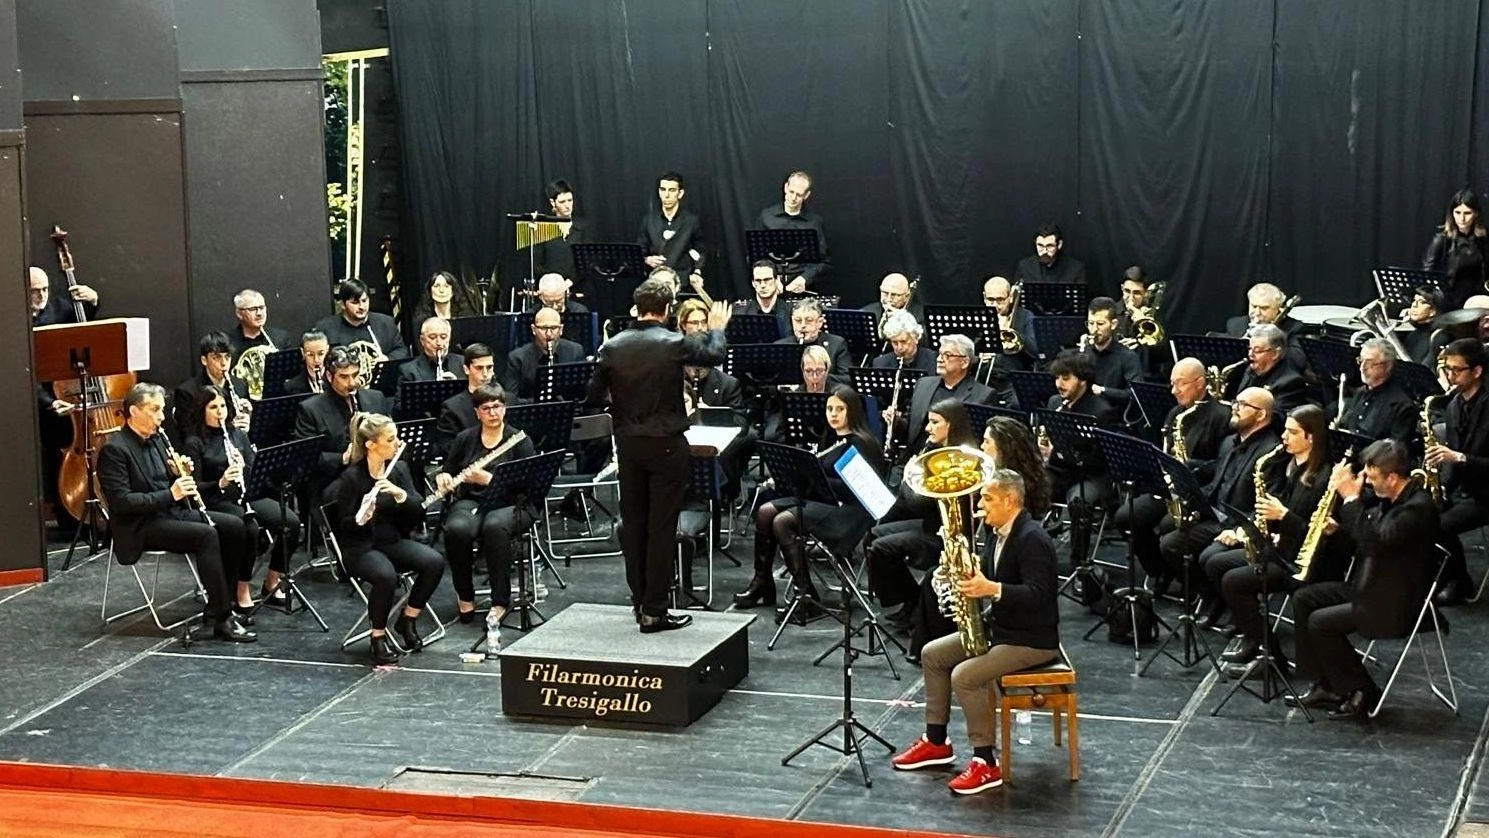 La Filarmonica Tresigallo apre la stagione estiva con il concerto di primavera al Teatro ‘900 di Tresigallo. Il programma include nuove proposte musicali e solisti di talento, presentati dal direttore Paolo Lenzi e dal presentatore Filippo Scabbia.